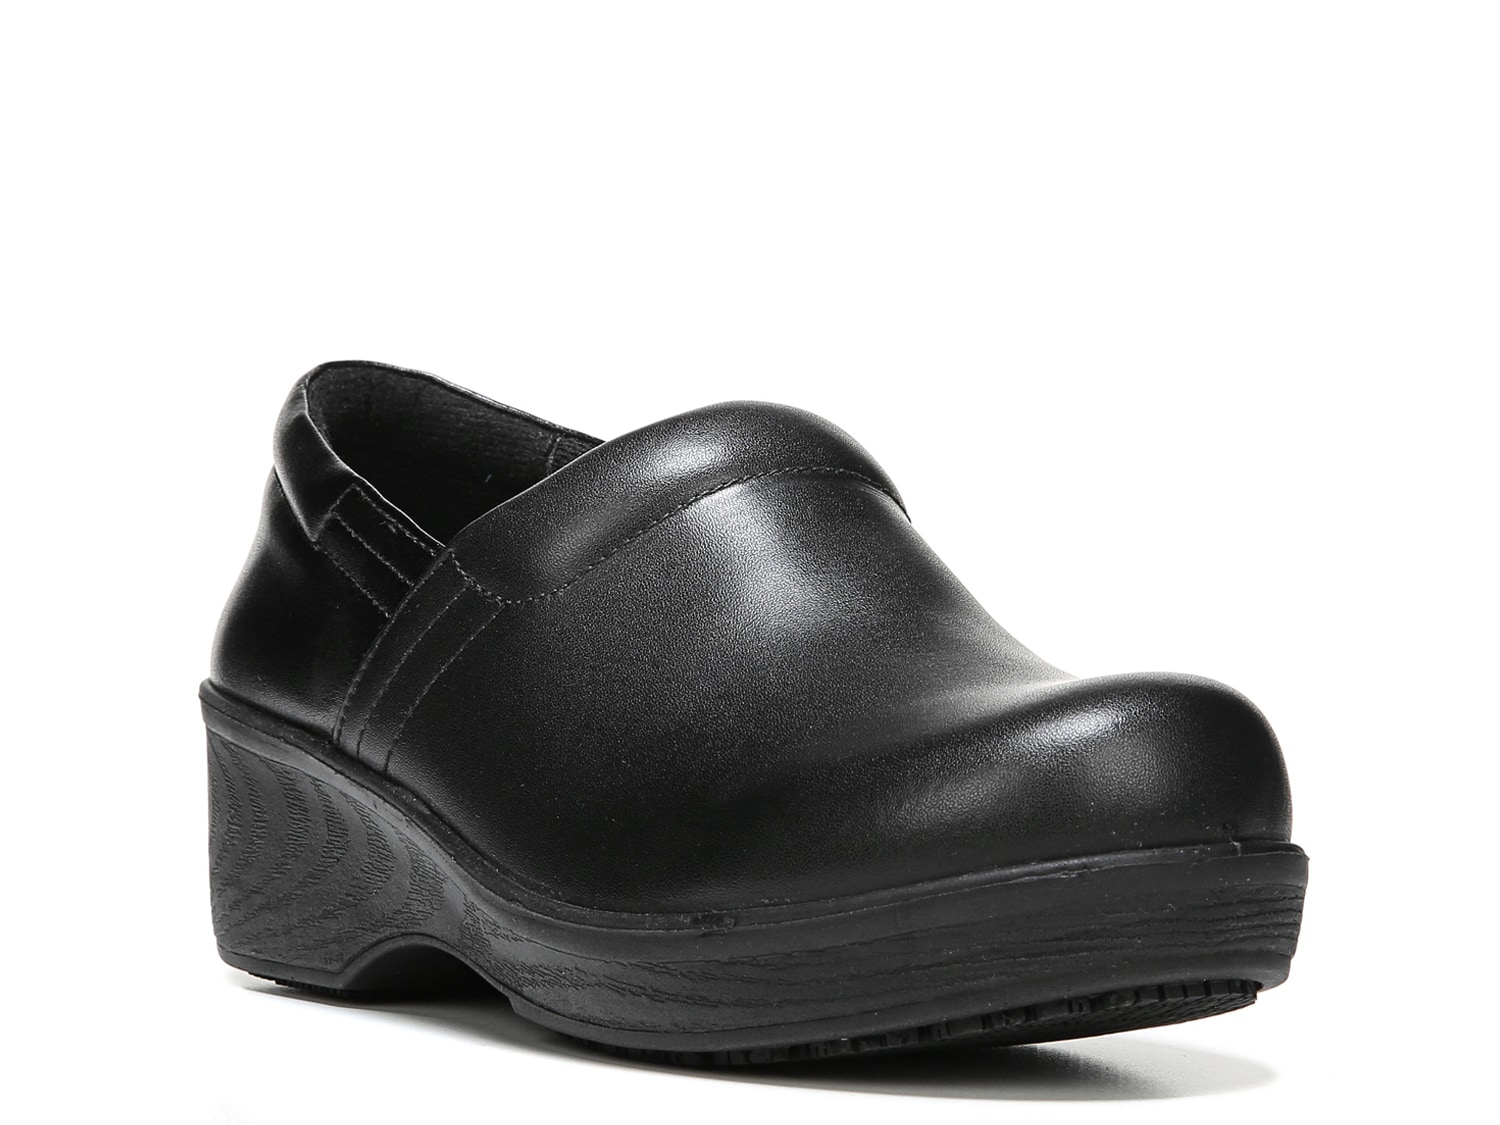 dr scholl's women's slip resistant shoes